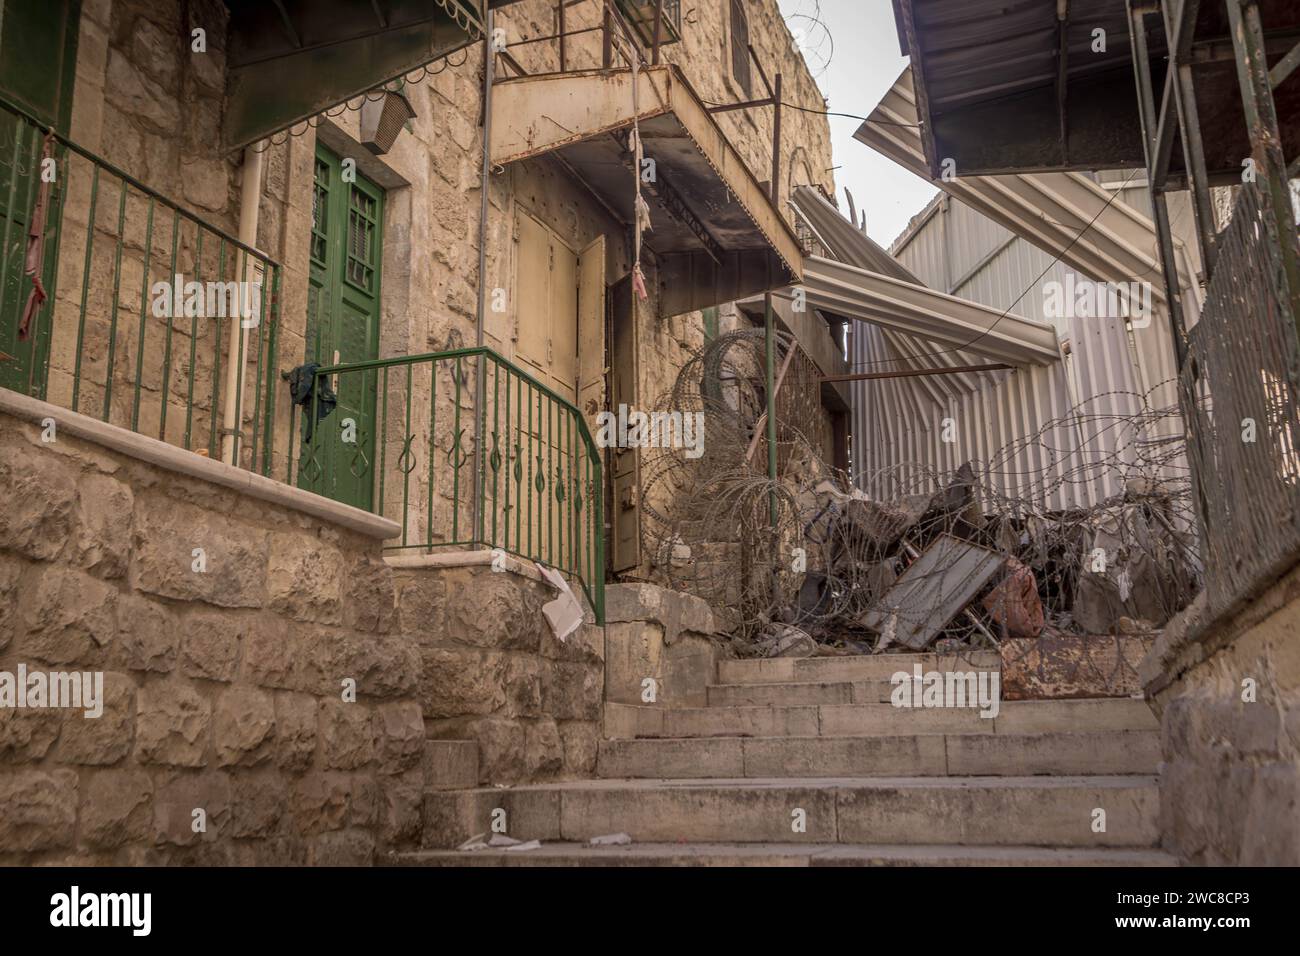 Der Stacheldraht und die blockierte Passage an der Grenze zwischen israelisch kontrollierten und von Palästina kontrollierten Gebieten Hebrons im palästinensischen Westjordanland. Stockfoto